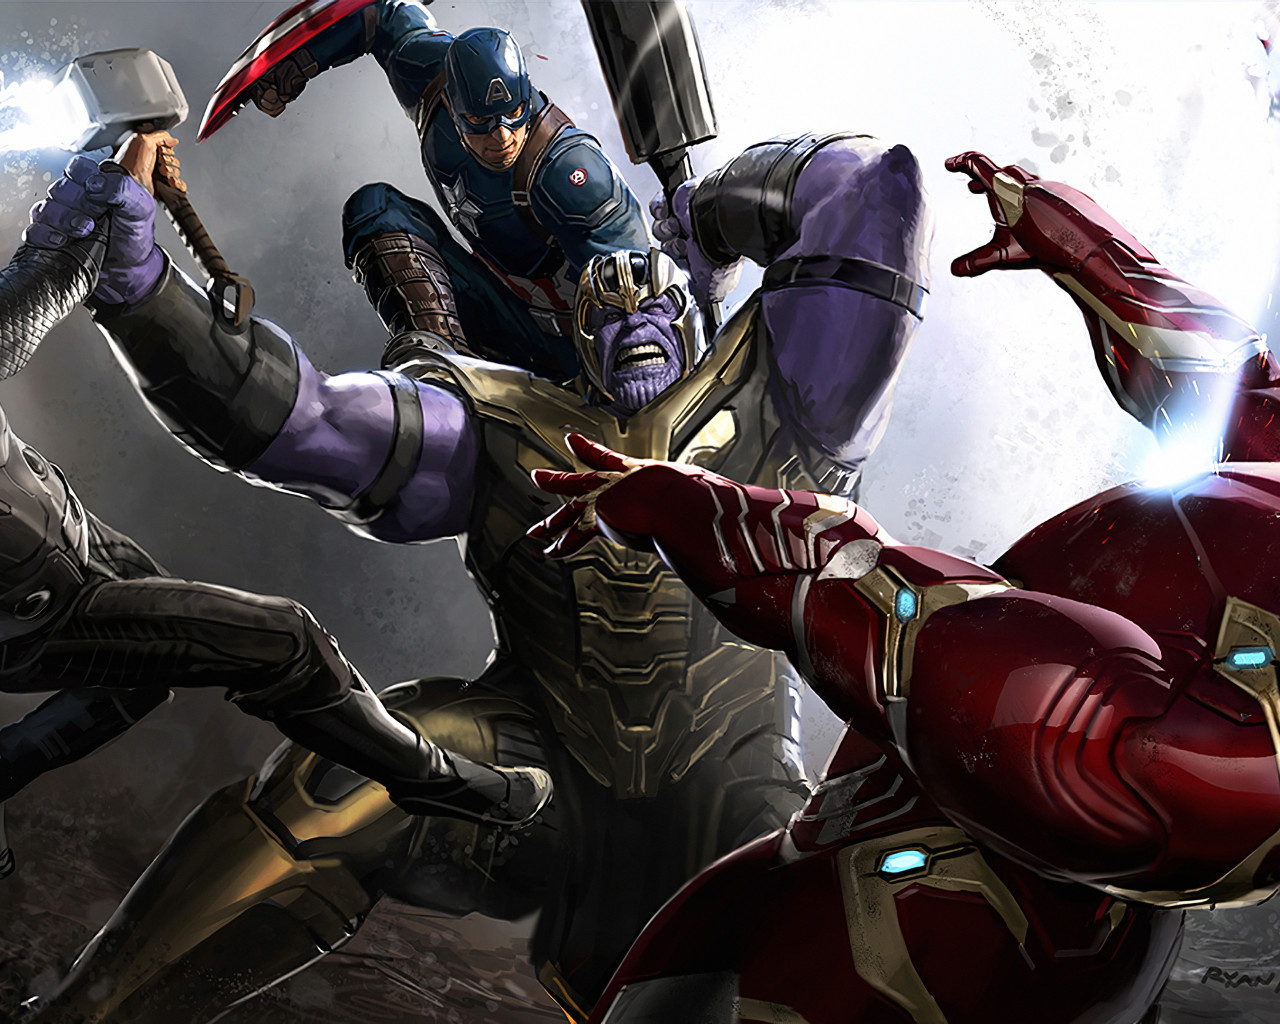 Avengers Endgame Concept Art Ryan Meinerding - 1280x1024 Wallpaper -  